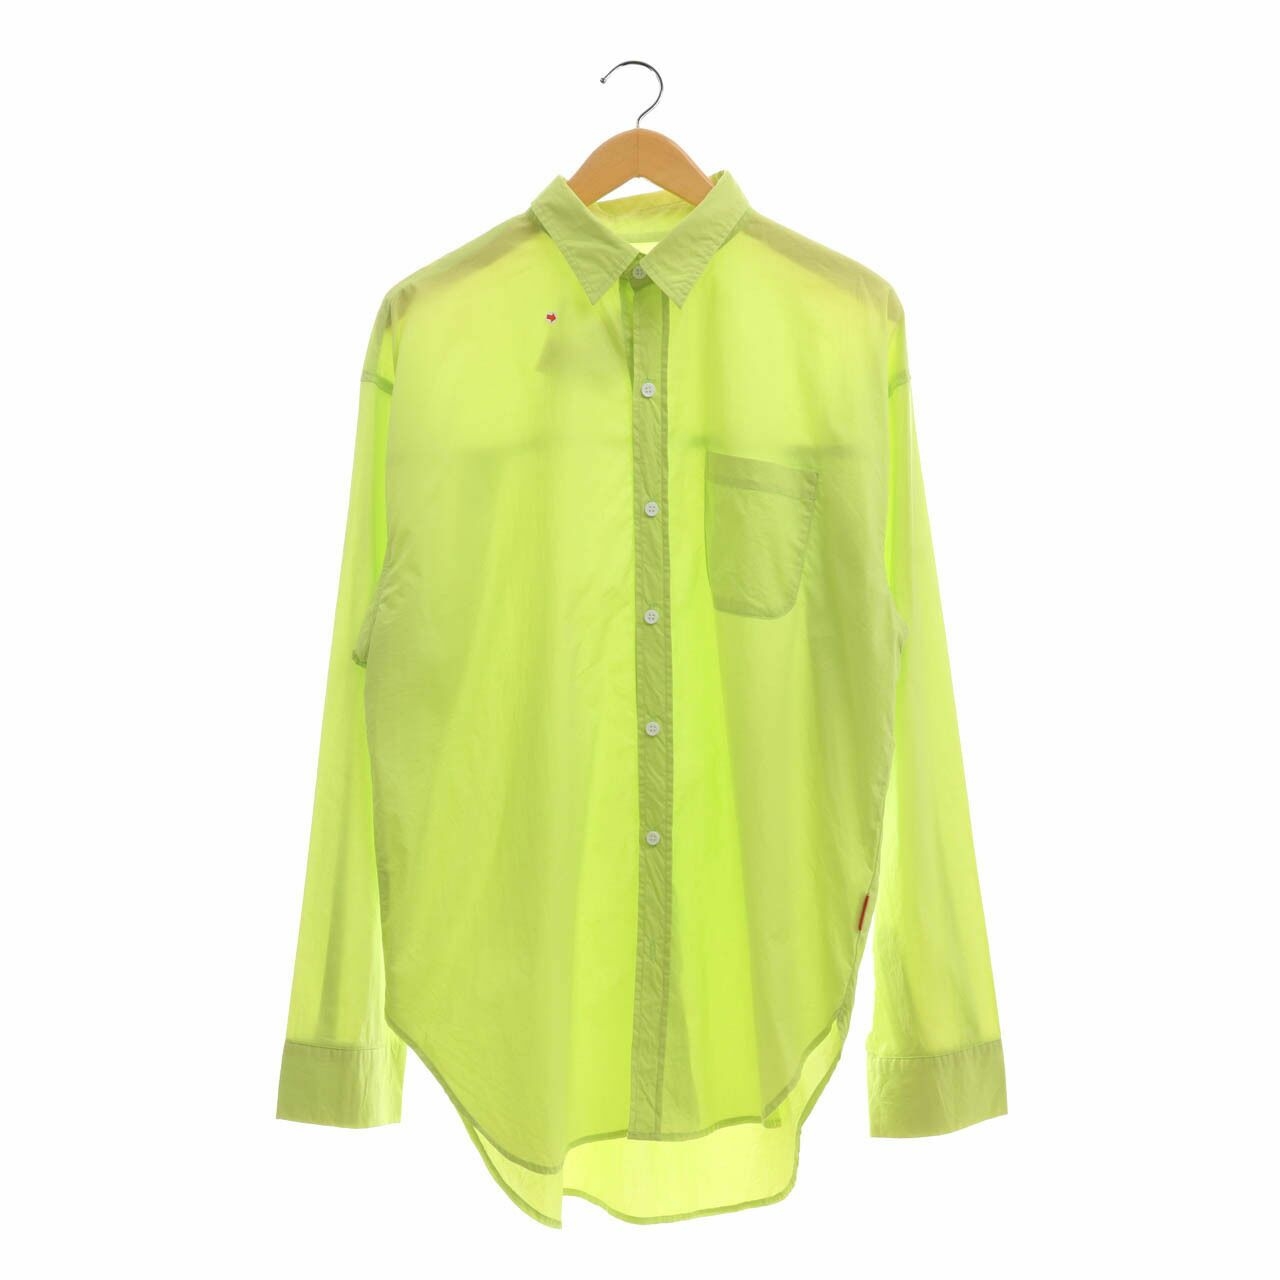 Connive Light Green Shirt